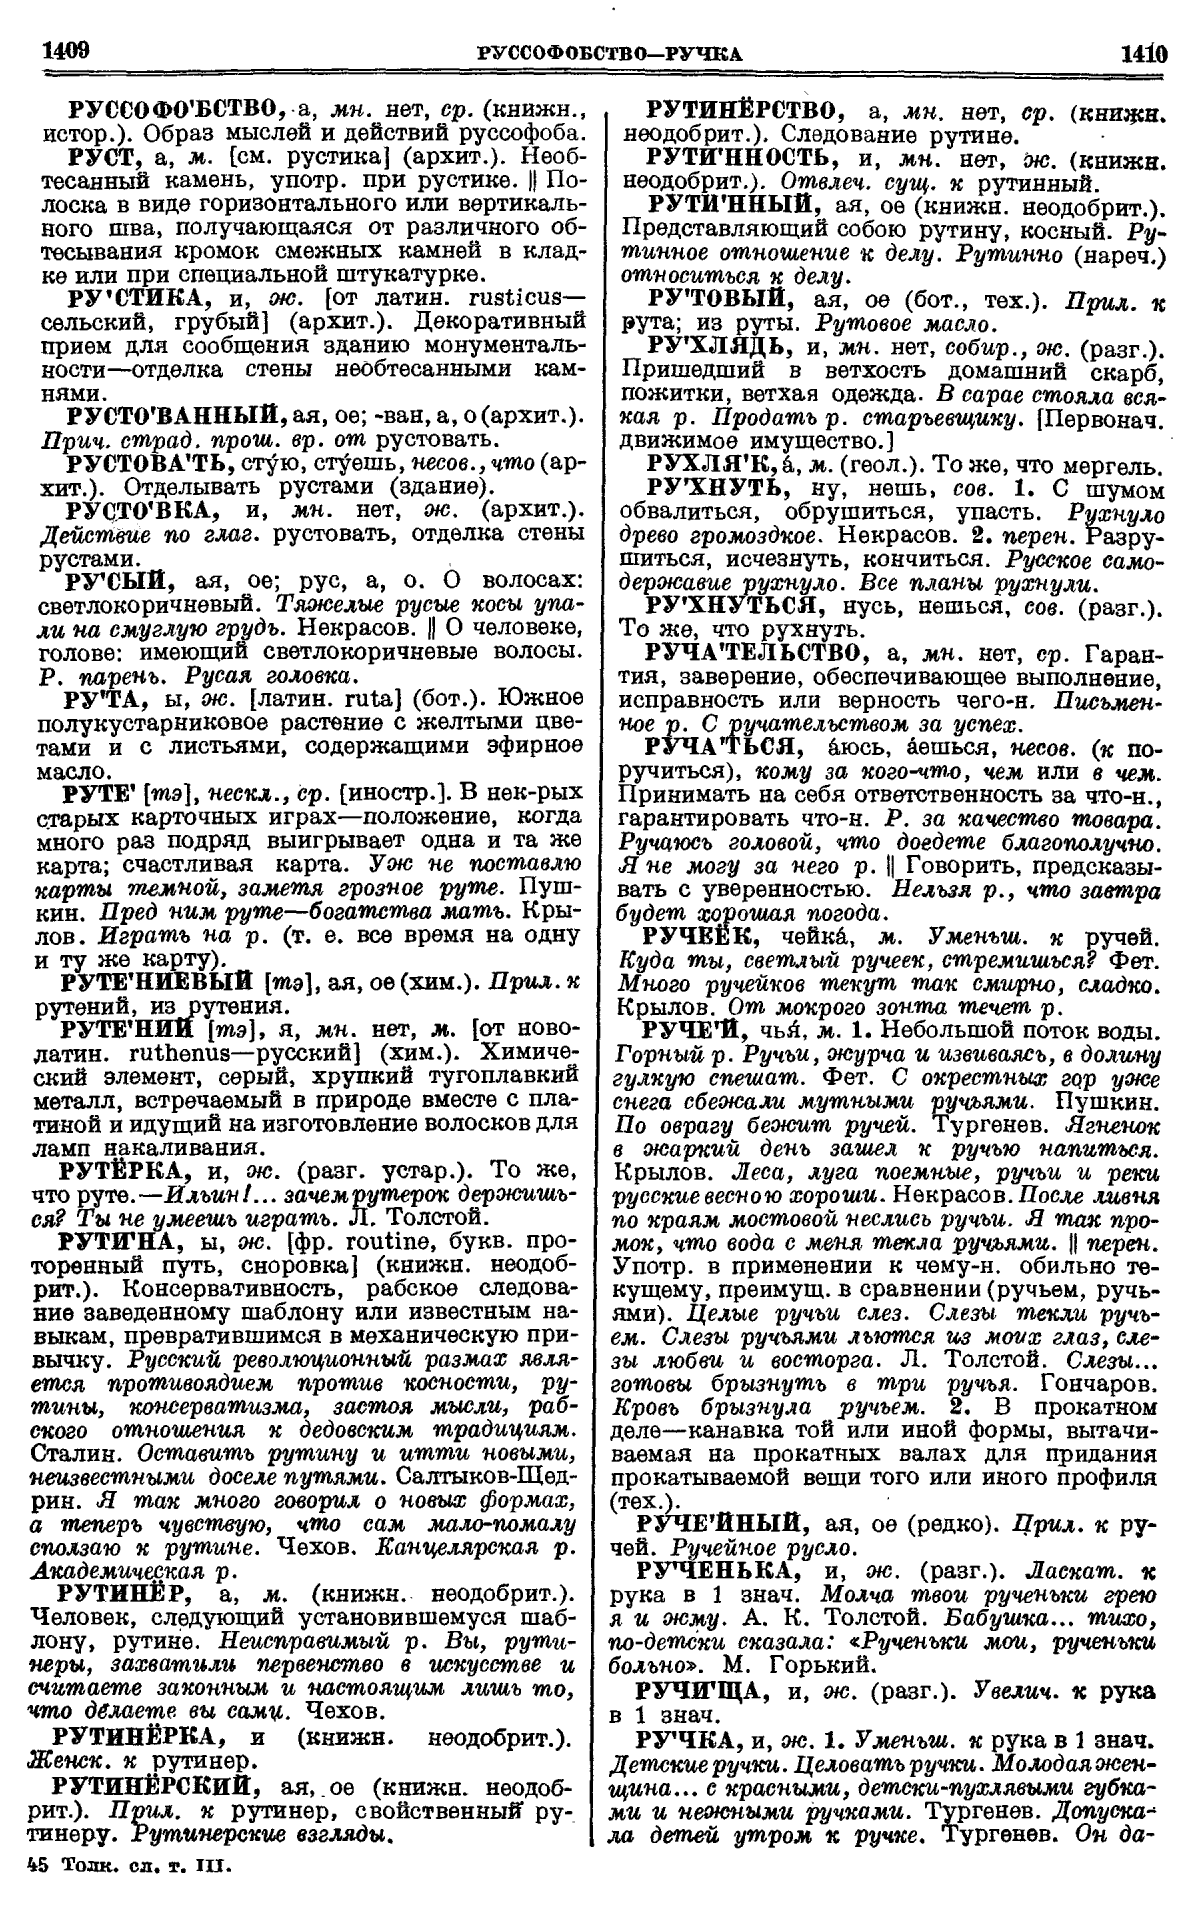 Фотокопия pdf / скан страницы 705 толкового словаря Ушакова (том 3)